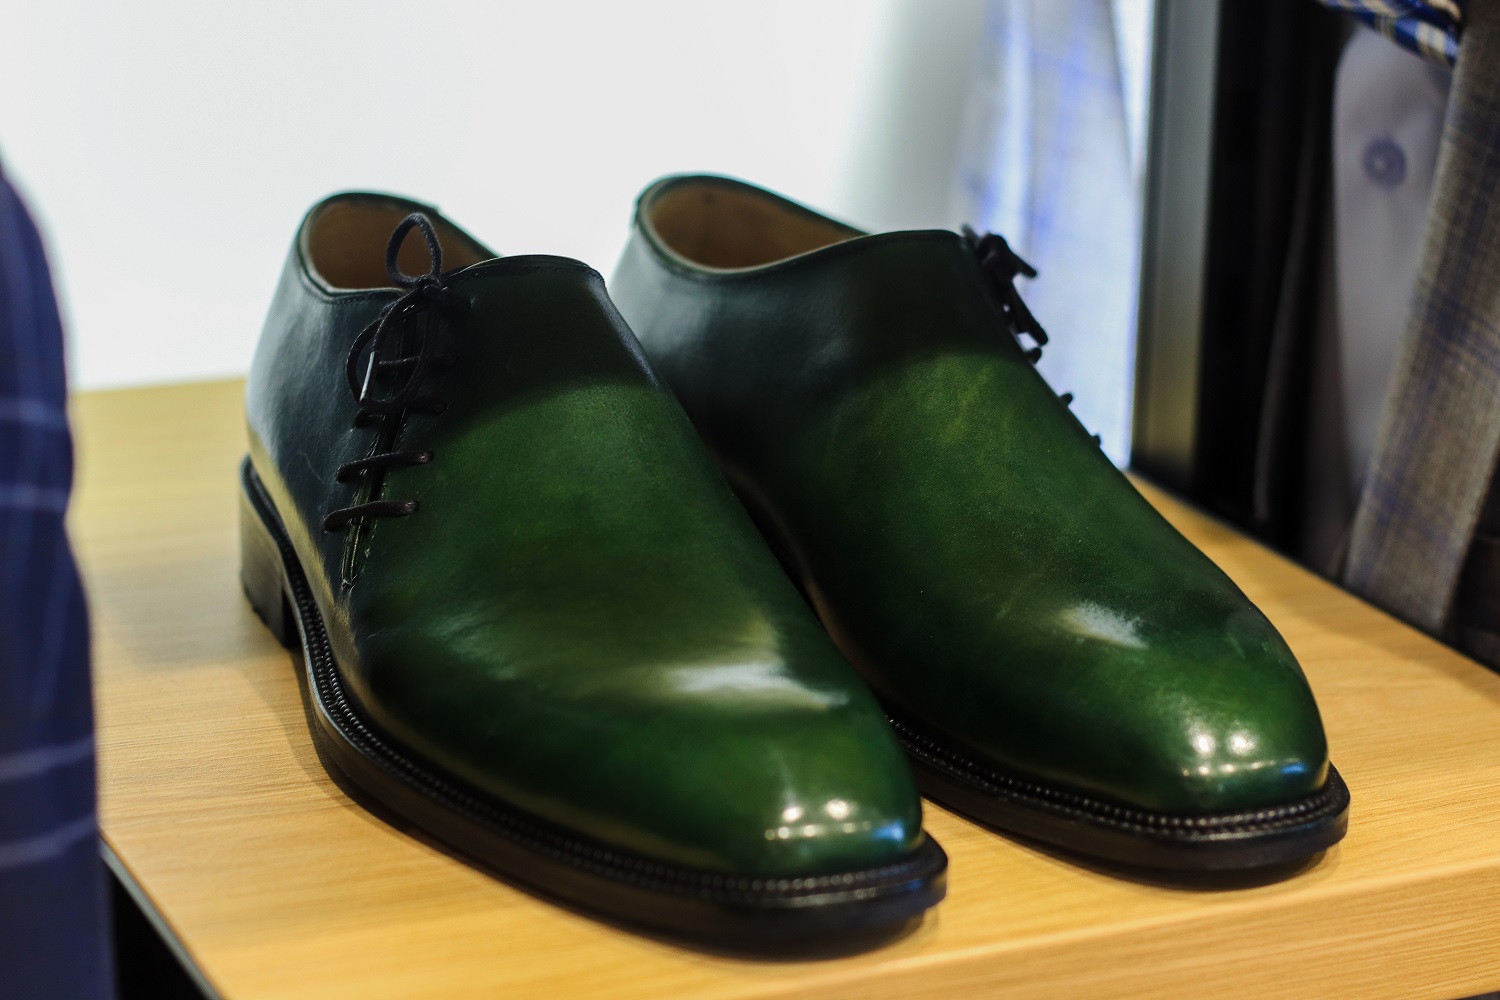 фото Цельнокройная модель с боковой шнуровкой темно-зеленый цвет